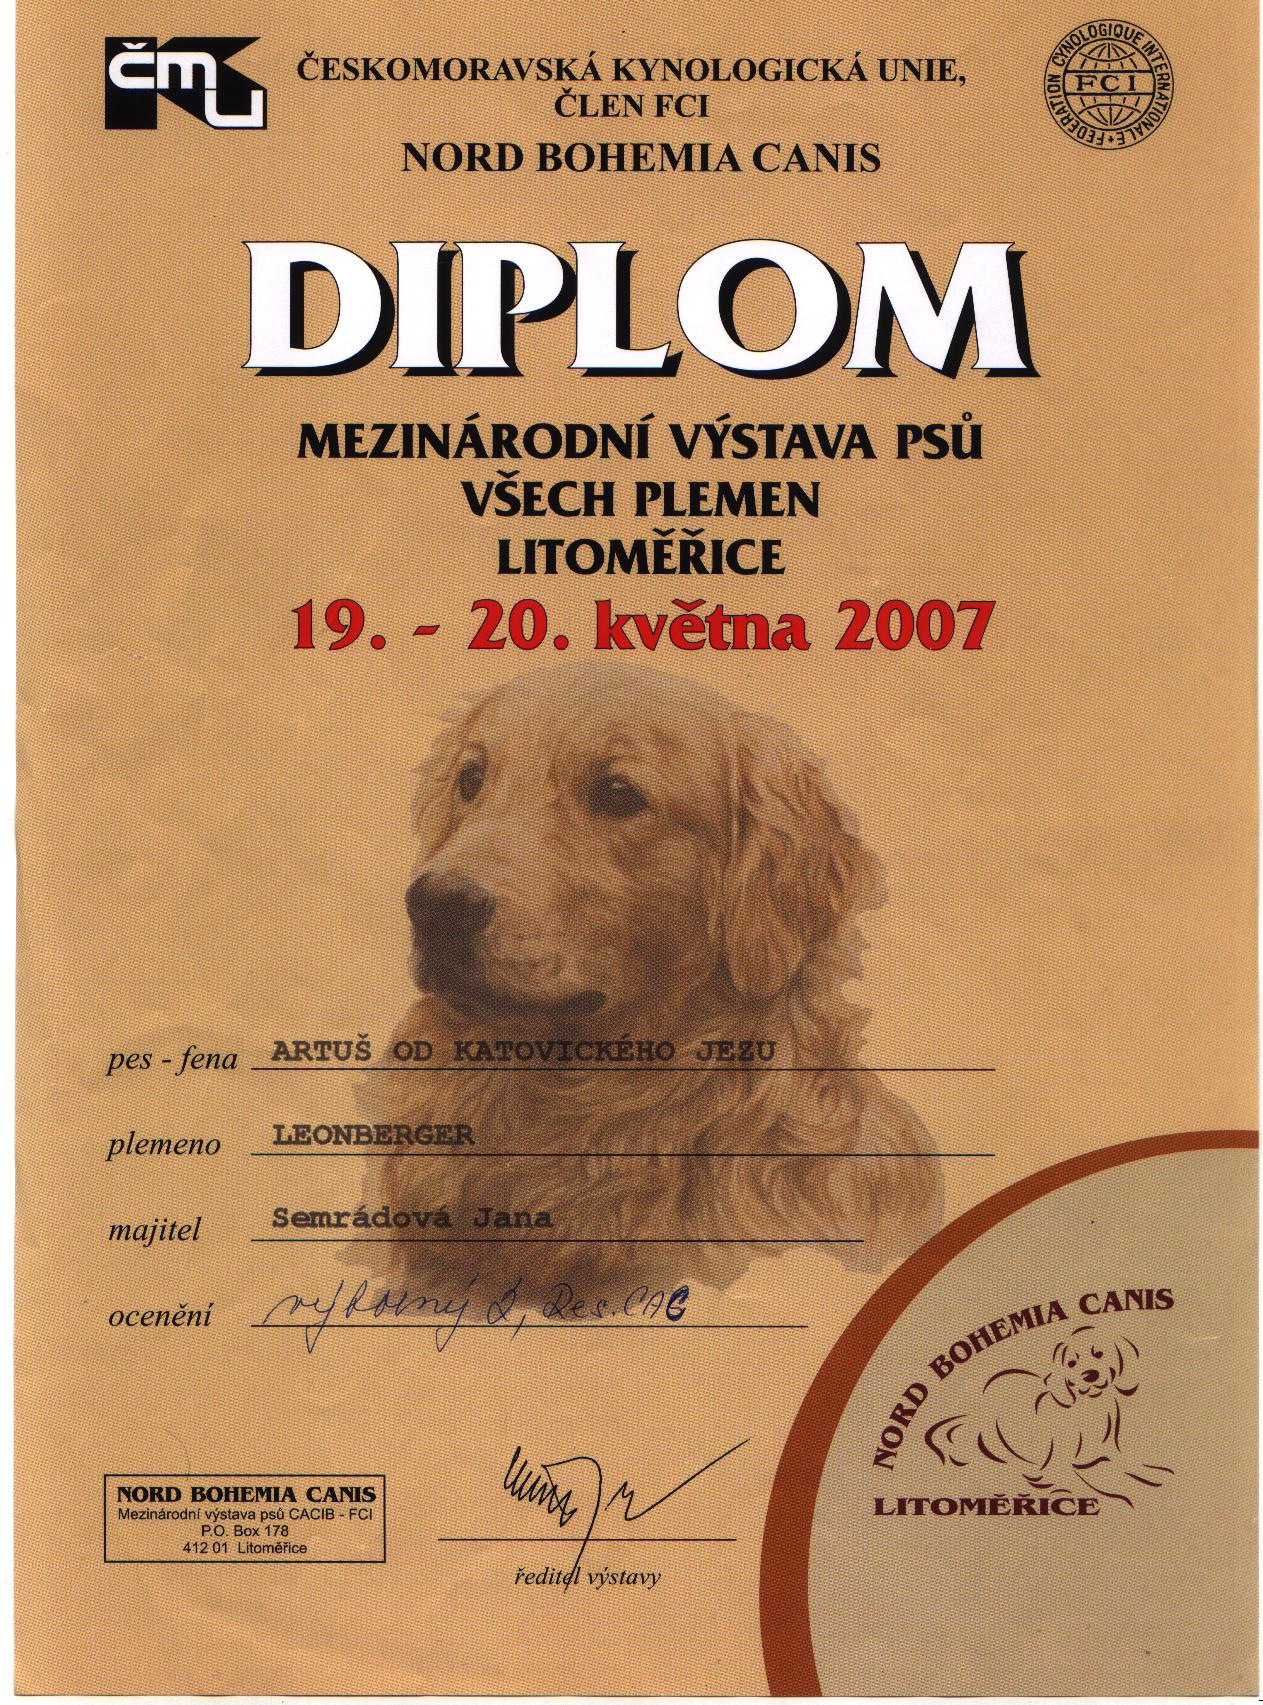 MVP litomerice Diplom.jpg